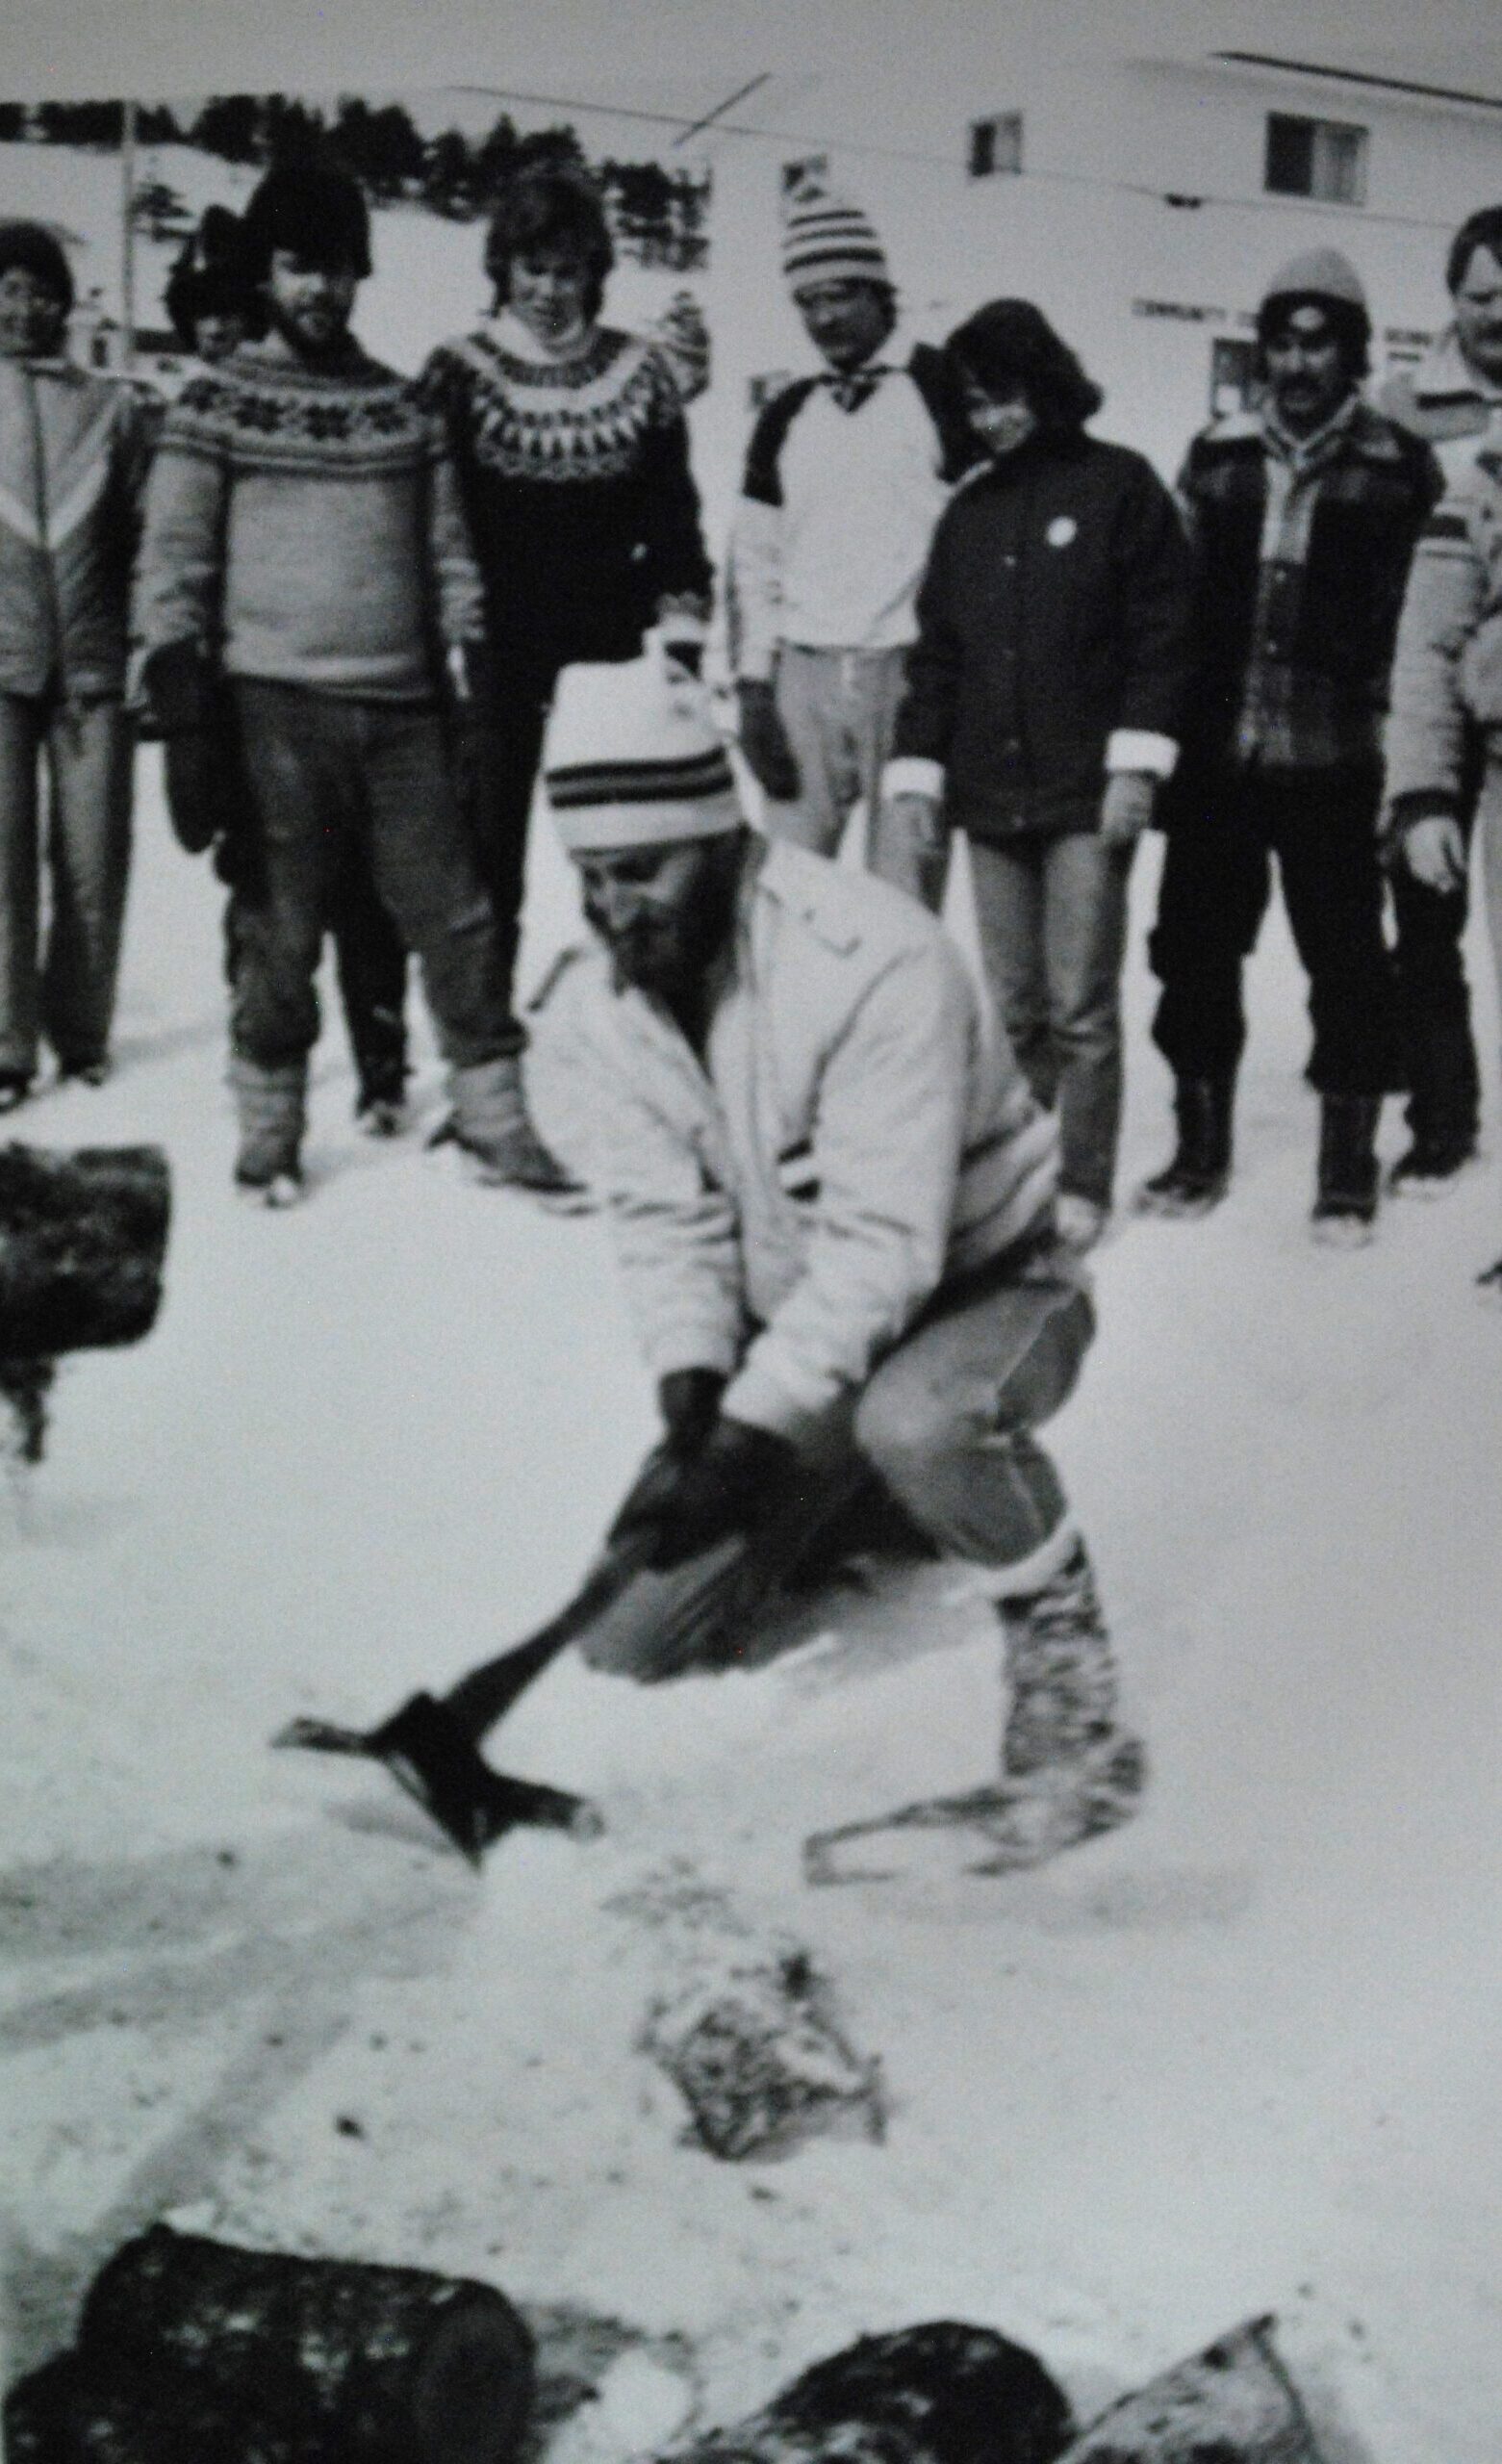 Une photo noire et blanc d'un homme qui frappe un morceau de bois avec une hache en avant d'un group de spectateur. C'est l'hiver et tout le monde porte des vêtements chauds.